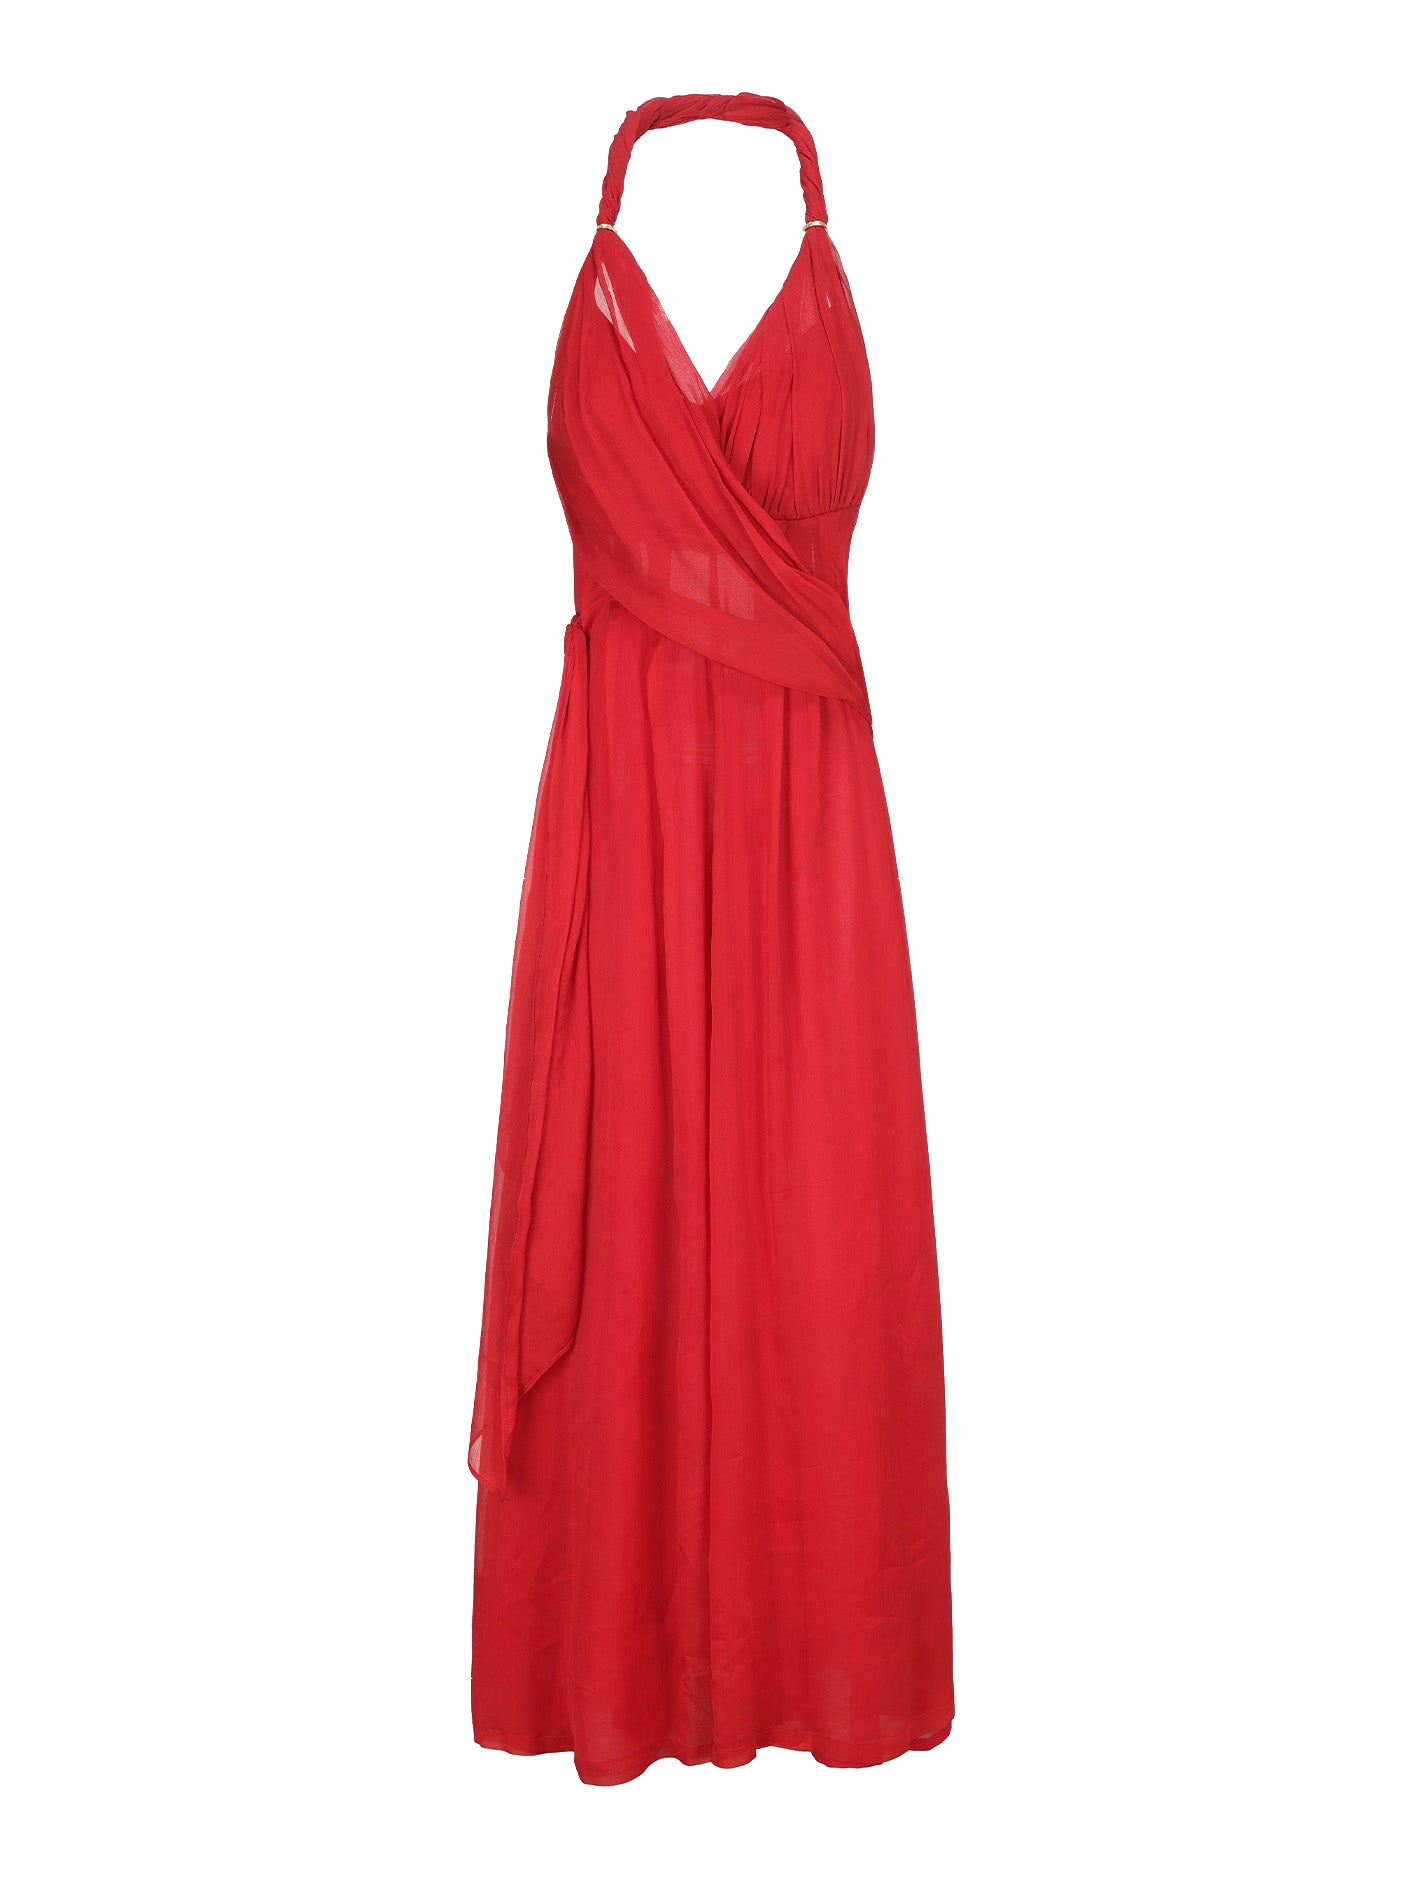 Nana Jacqueline Amber Chiffon Dress (red)